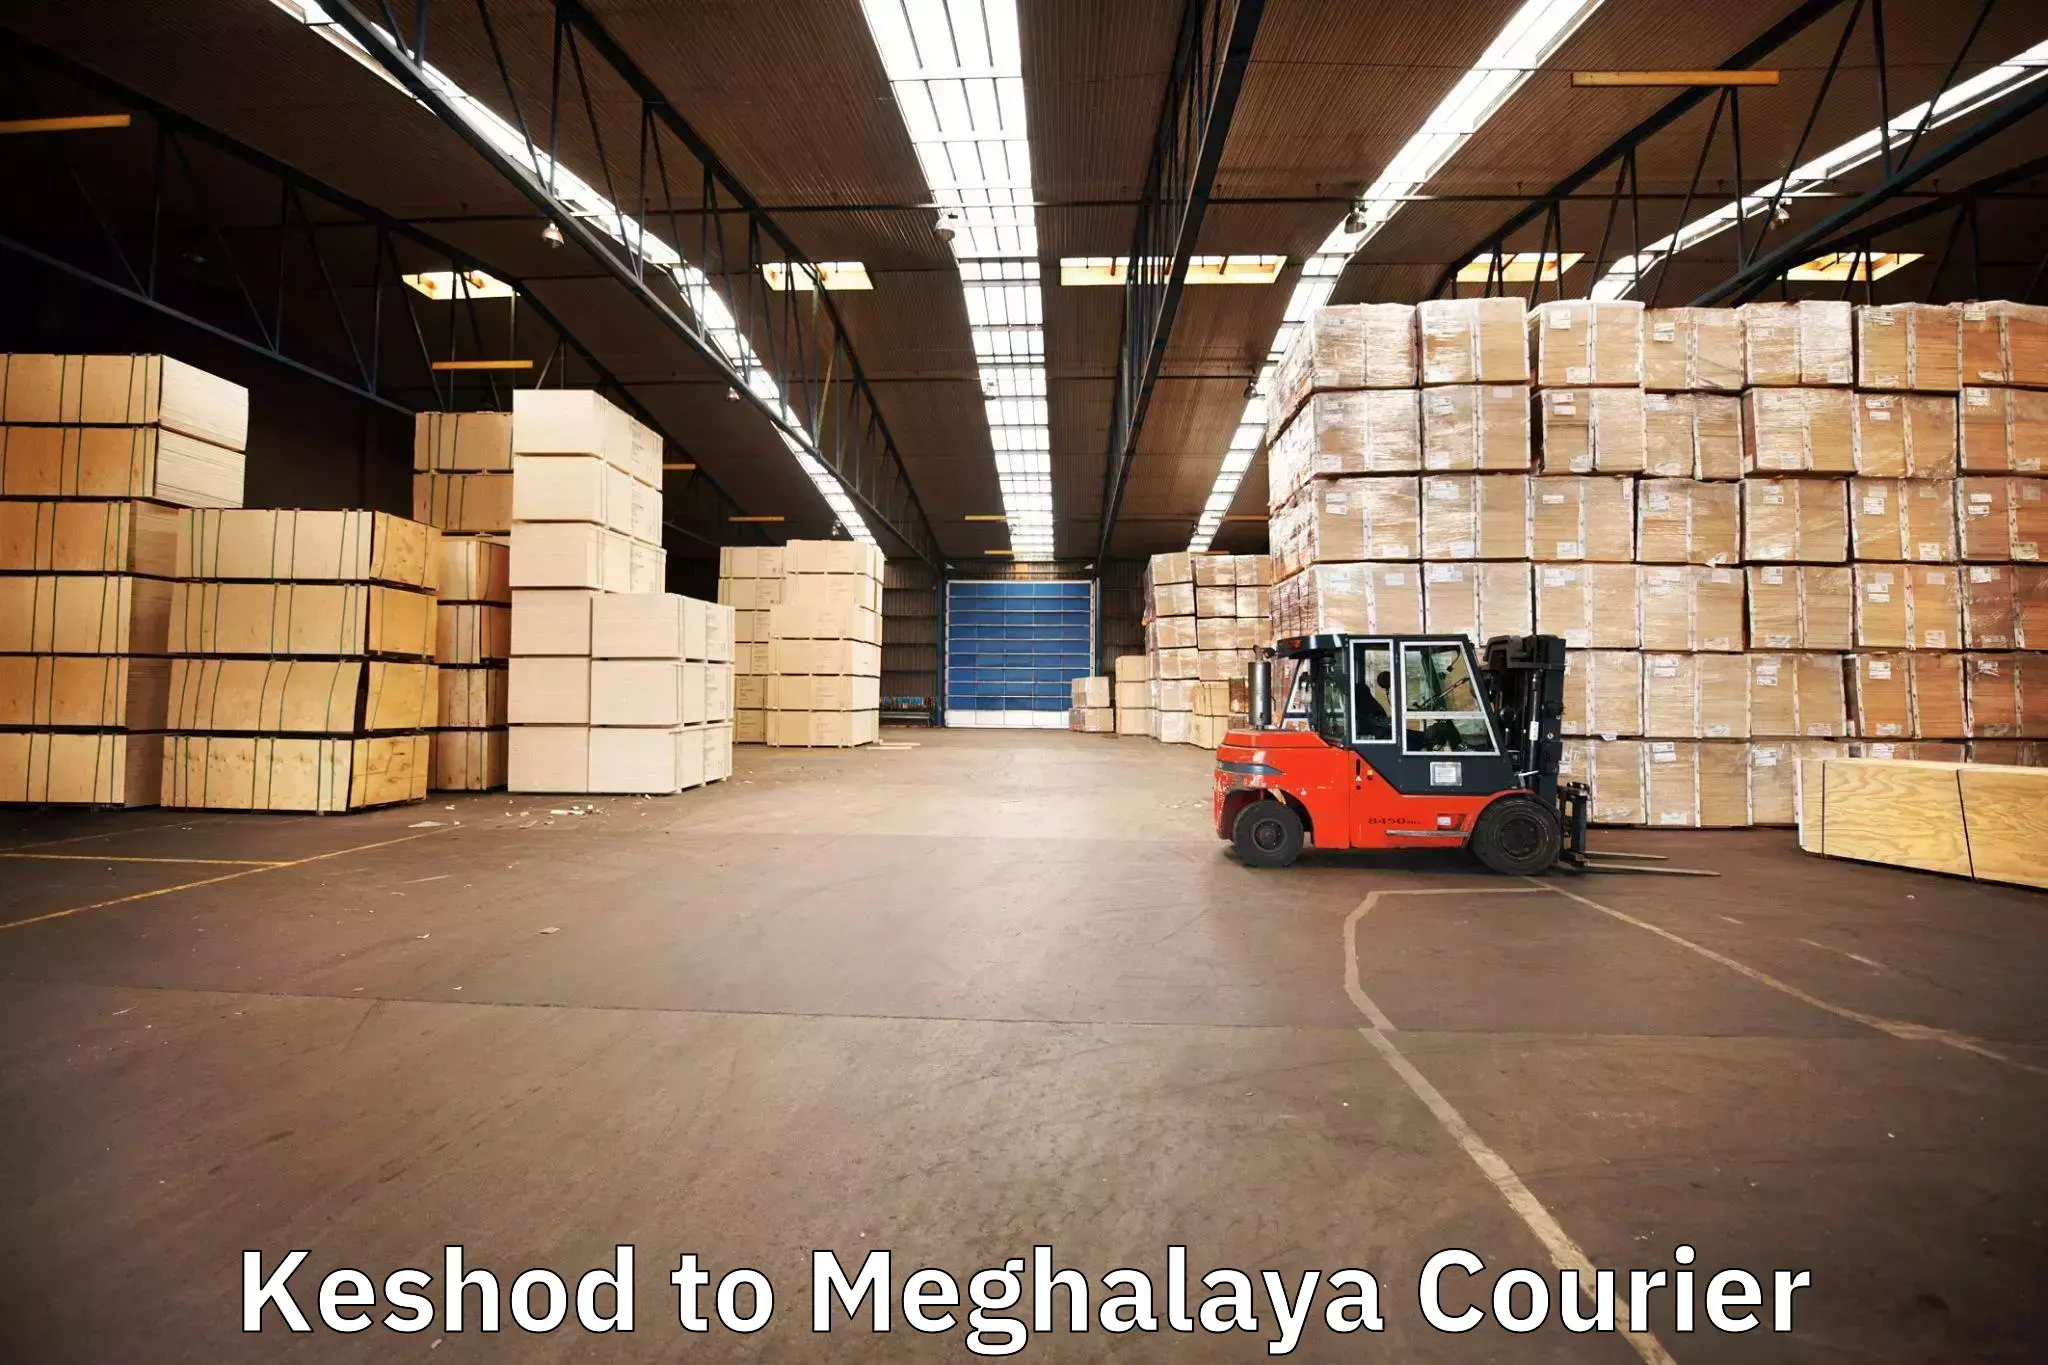 Furniture relocation experts Keshod to Meghalaya